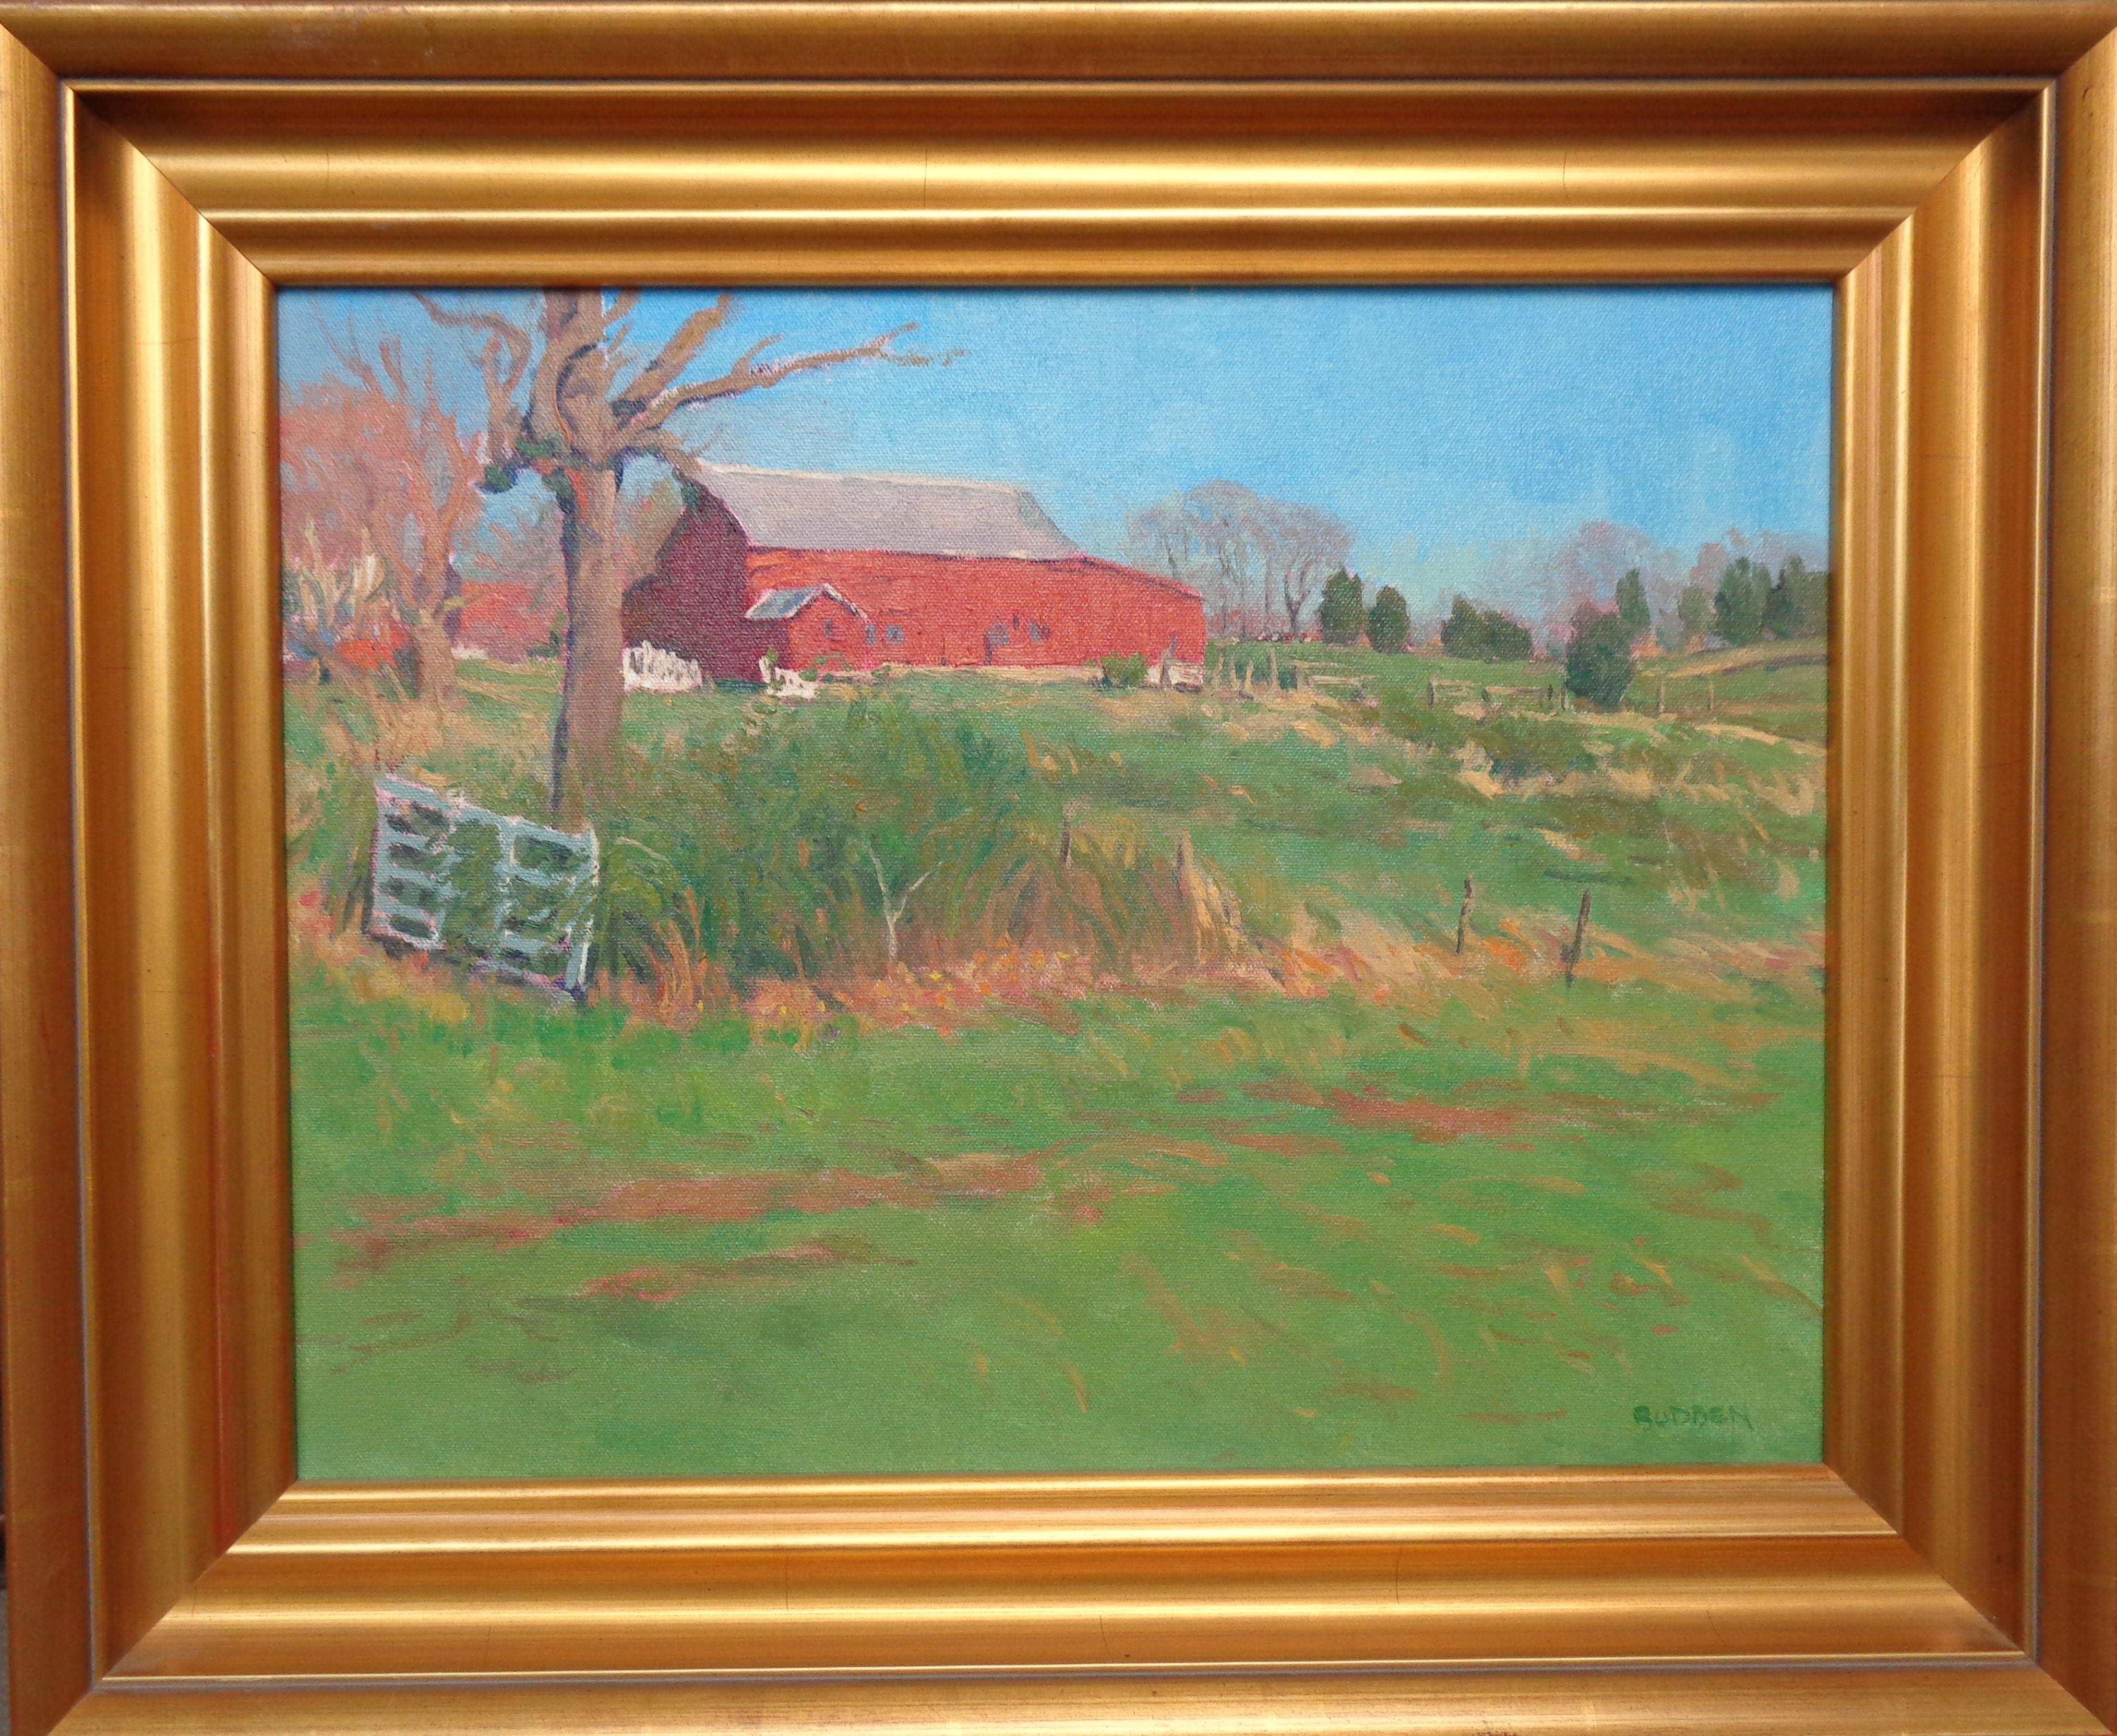 La lumière luxuriante du printemps 
huile/toile
image 14 x 18, est un paysage impressionniste peint à l'huile d'une grange près de mon studio que j'ai réalisé sur place en une seule séance. La peinture est sur toile et exsude les riches qualités de